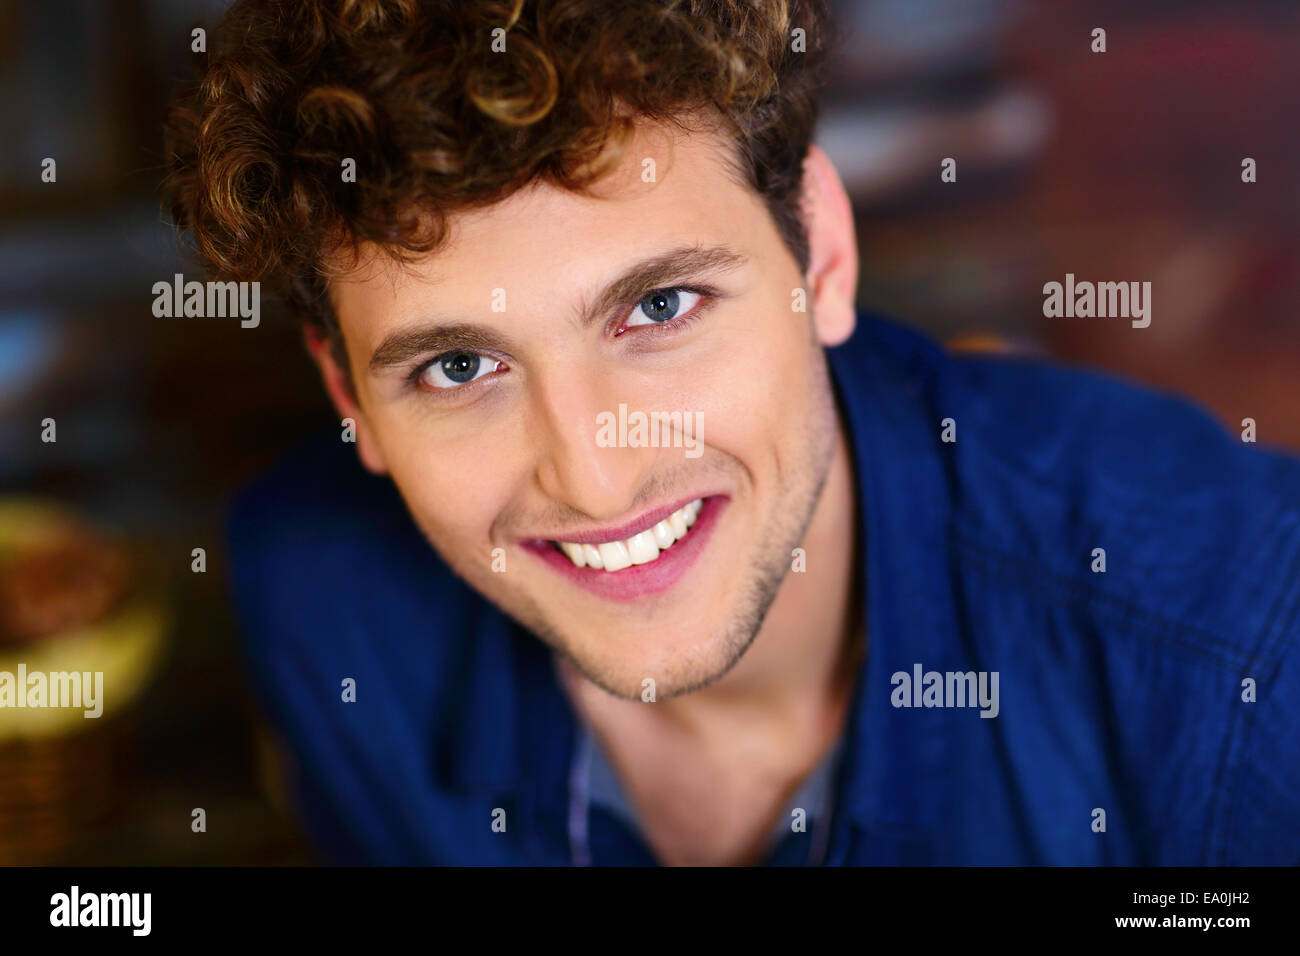 Closeup portrait of a smiling young man avec les cheveux bouclés Banque D'Images